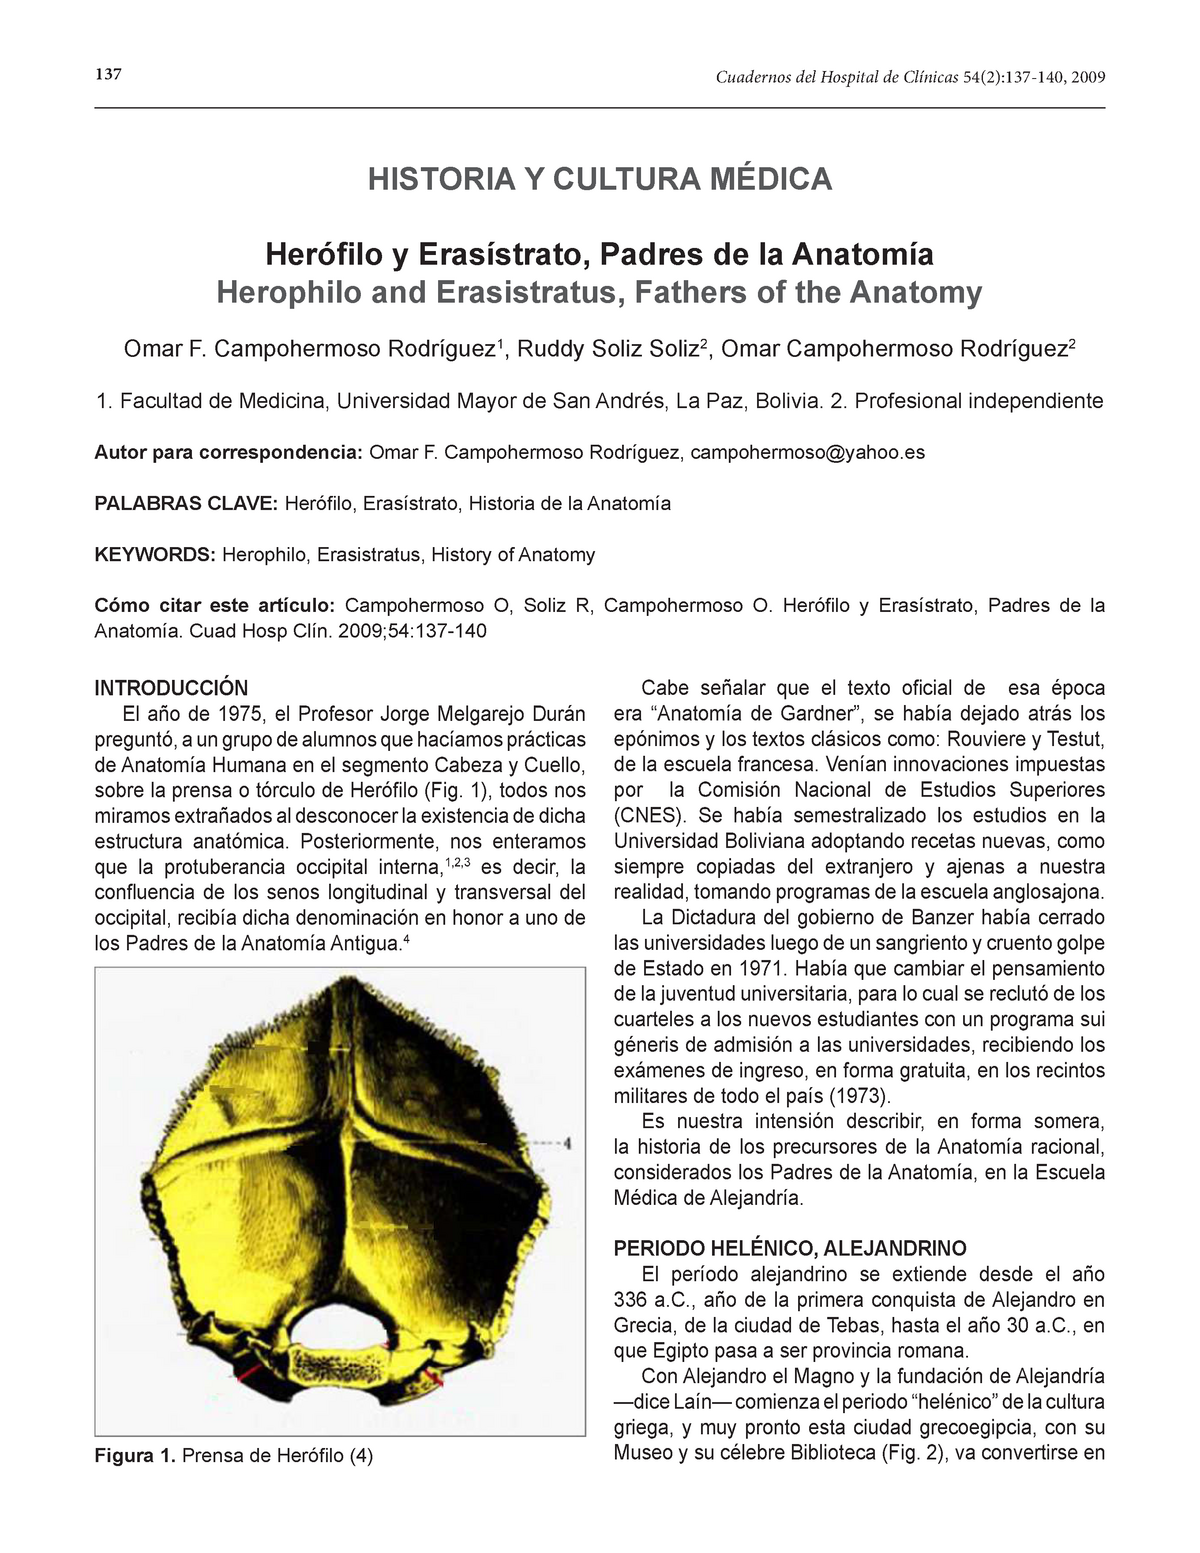 Padres de la anatomia - Herófilo, Erasístrato, Historia de la Anatomía-  PERIODO HELÉNICO, - Studocu